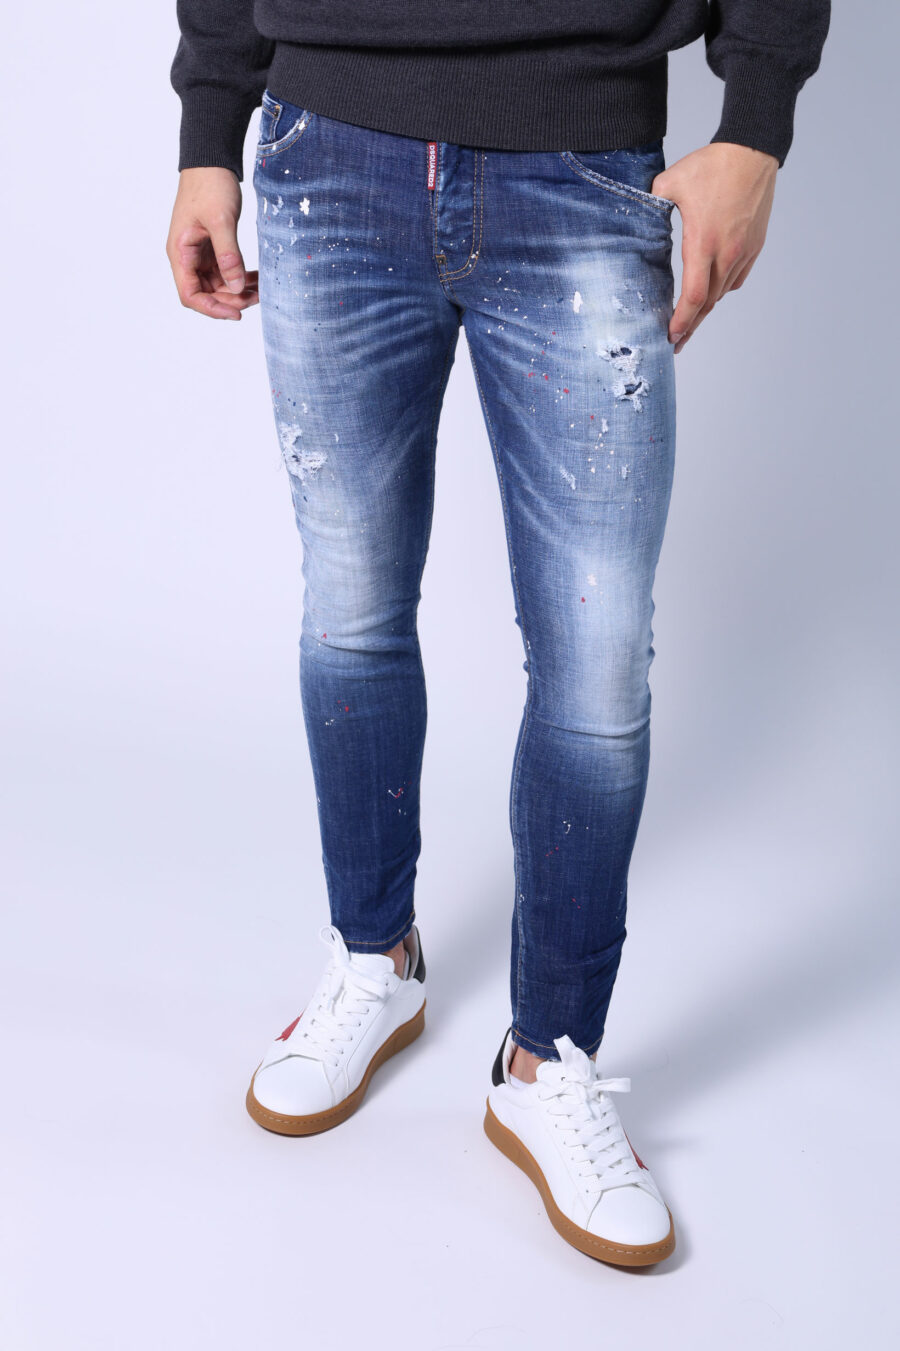 Halbgetragene blaue "Skater"-Jeans mit Farbe und Rissen - Ohne Titel Katalog 05391